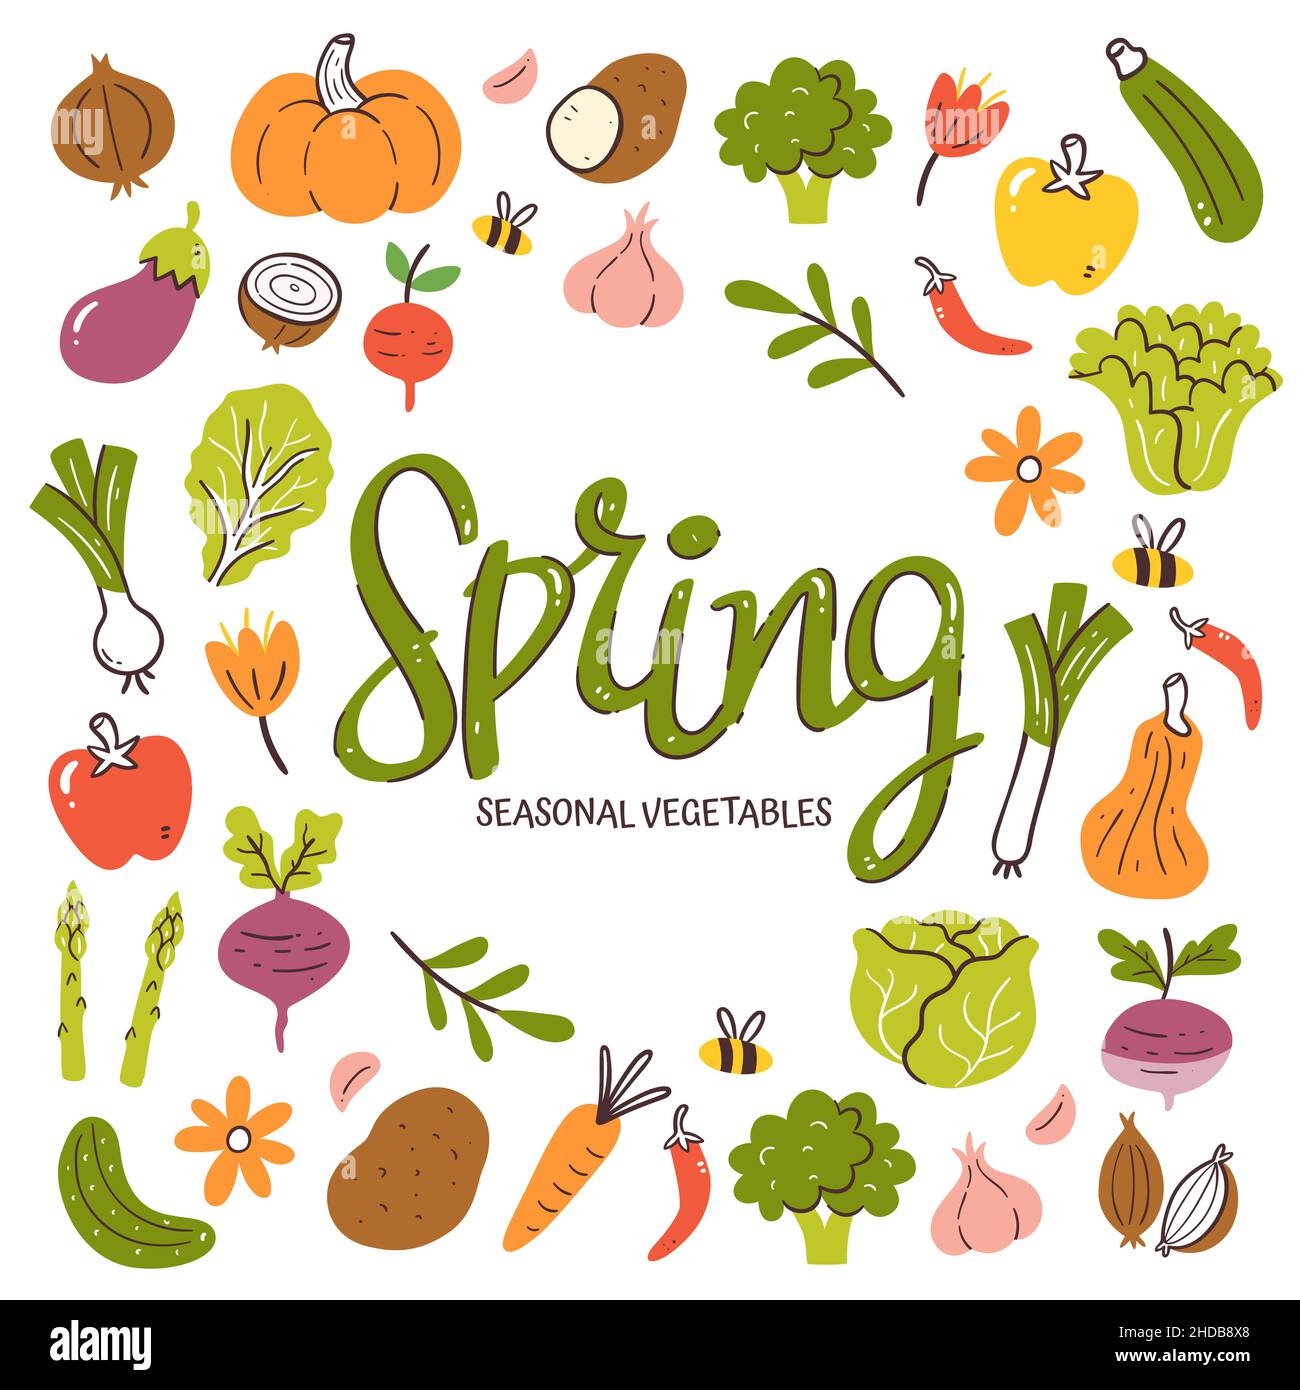 Saisonales Gemüse im Hintergrund. Frühlingsgemüse Komposition aus bunten handgezeichneten Vektor-Icons, isoliert auf weißem Hintergrund. Stock Vektor